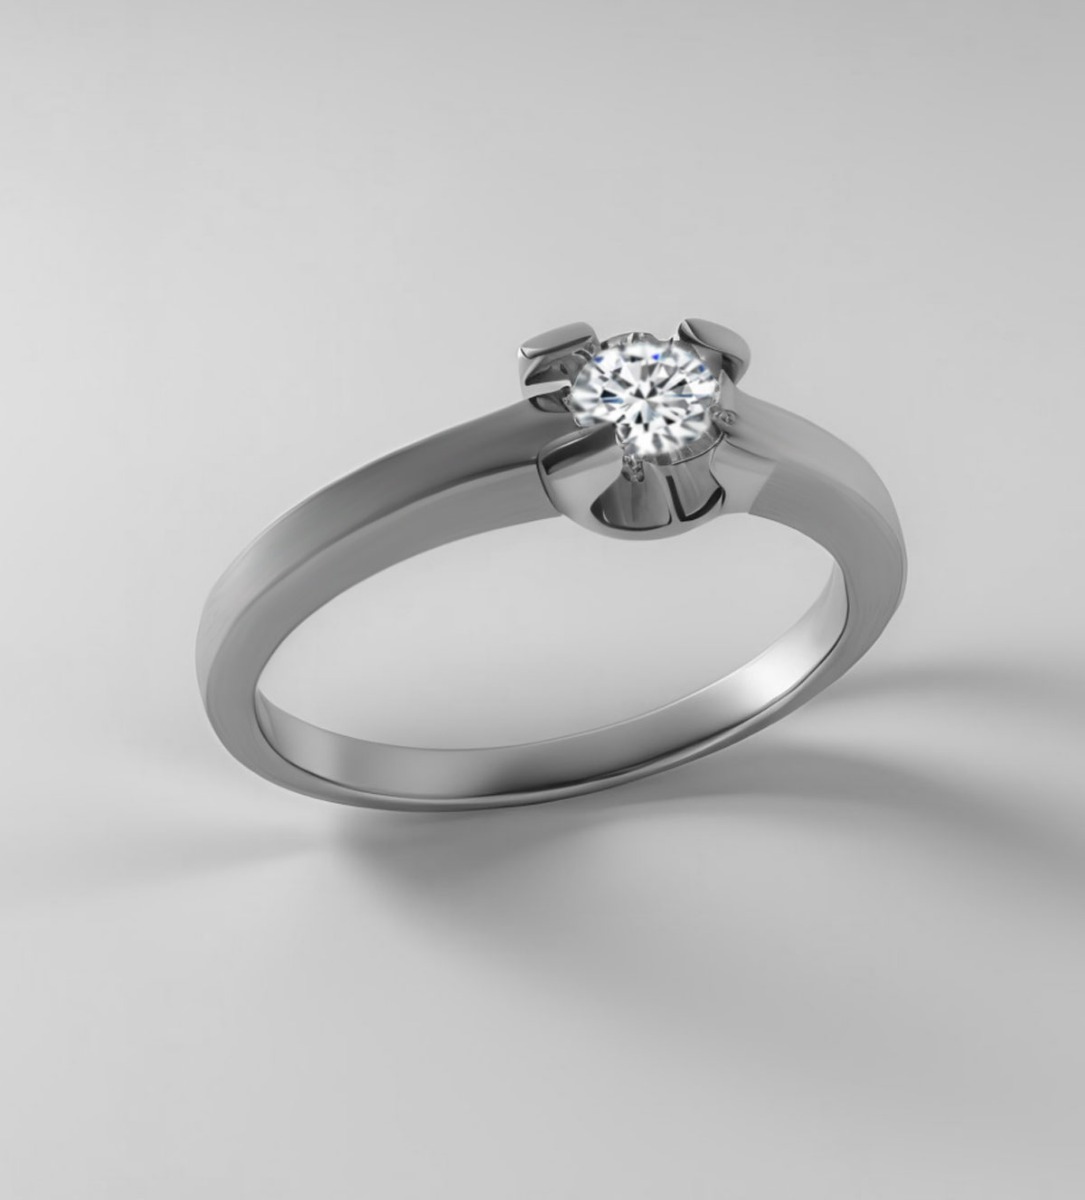 anillo compromiso de platino con diamante precio muy barato especial joyeria online foto render